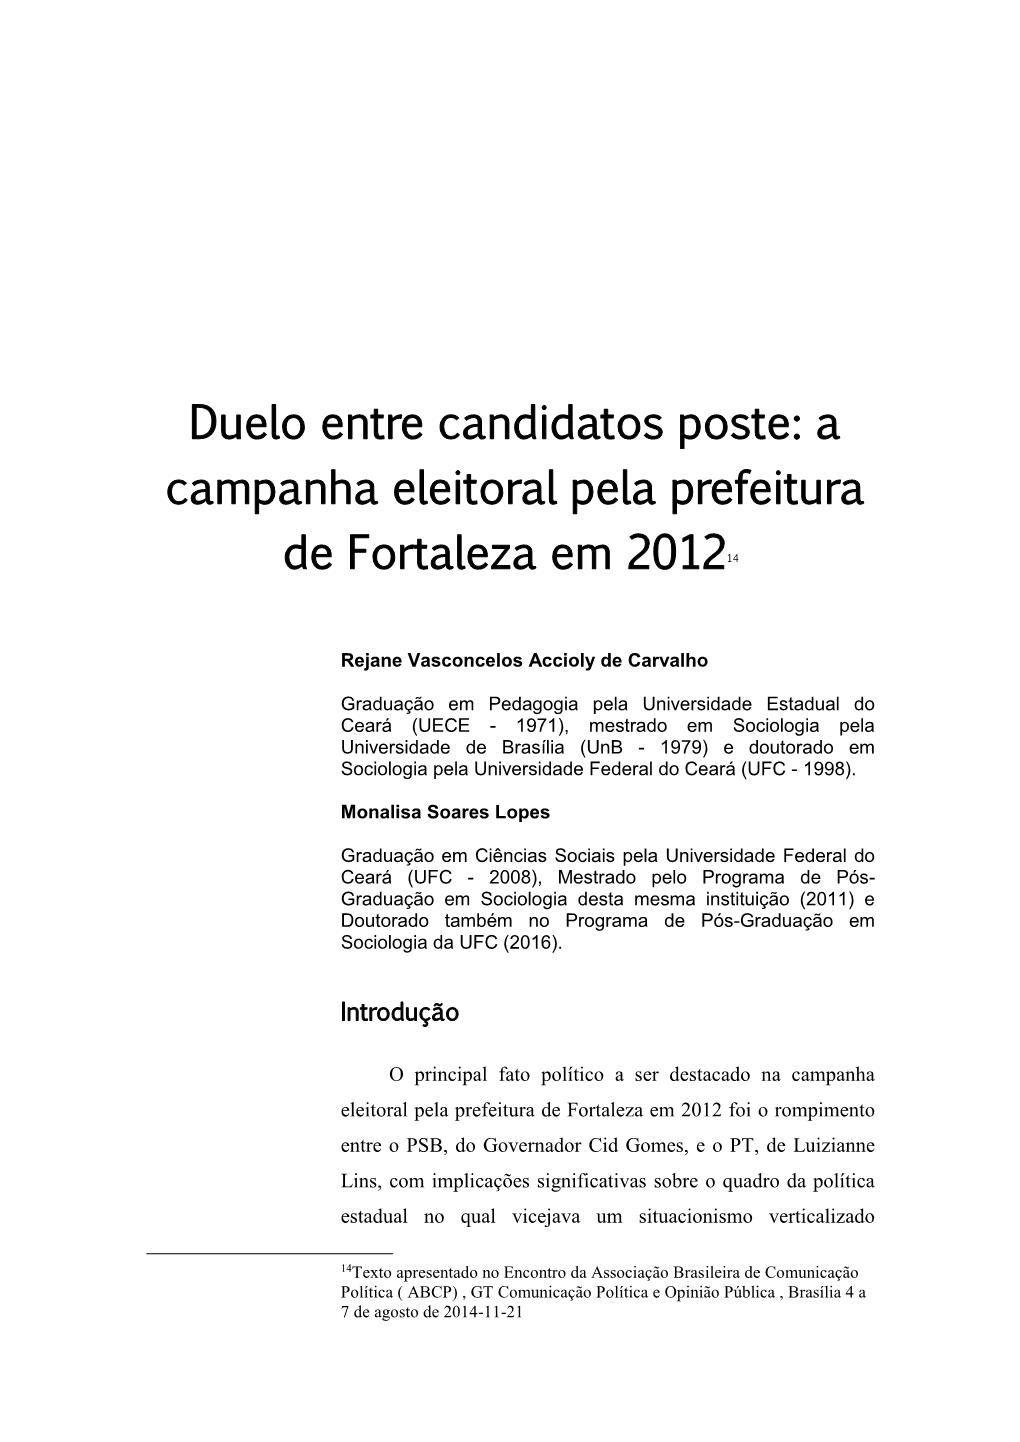 Duelo Entre Candidatos Poste: a Campanha Eleitoral Pela Prefeitura